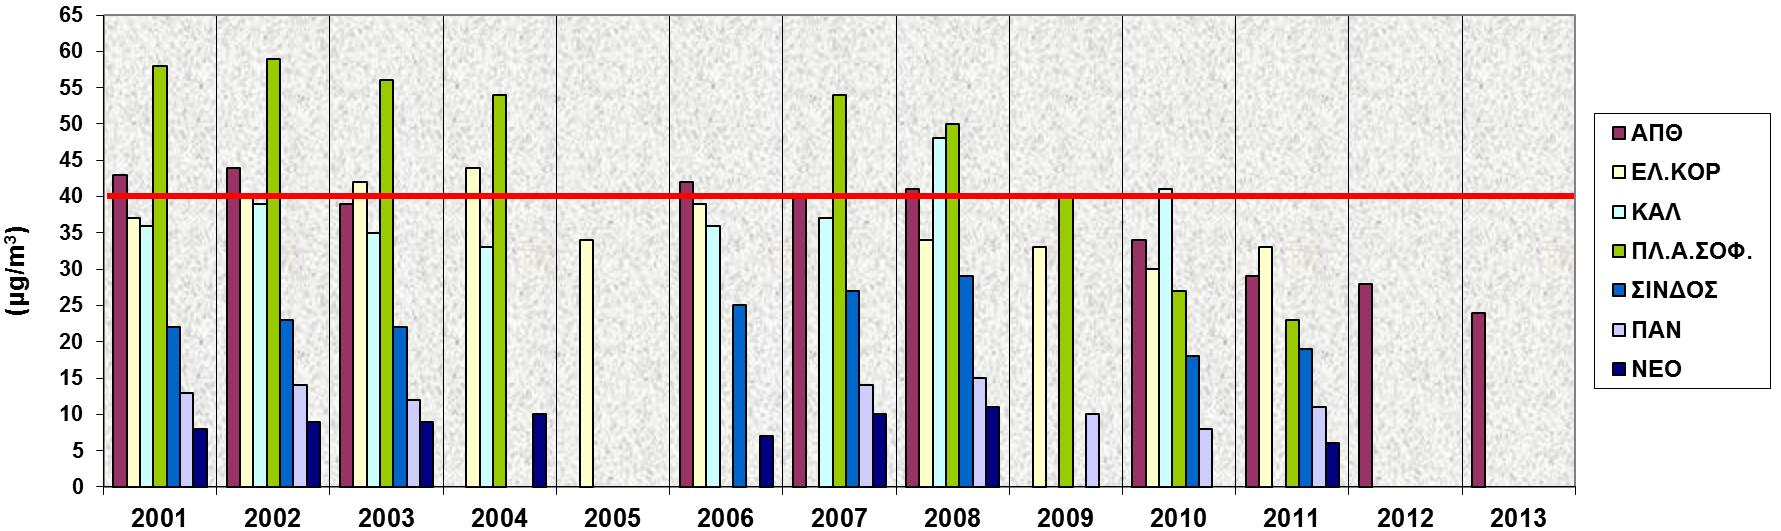 ΝO 2 στη Θεσσαλονίκη, διαχρονική εξέλιξη 2001-2013 2001-2008: μικρή τάση μείωσης των συγκεντρώσεων, υπέρβαση του ορίου μέσης ετήσιας τιμής των 40 μg/m 3, κυρίως στους αστικούς σταθμούς.